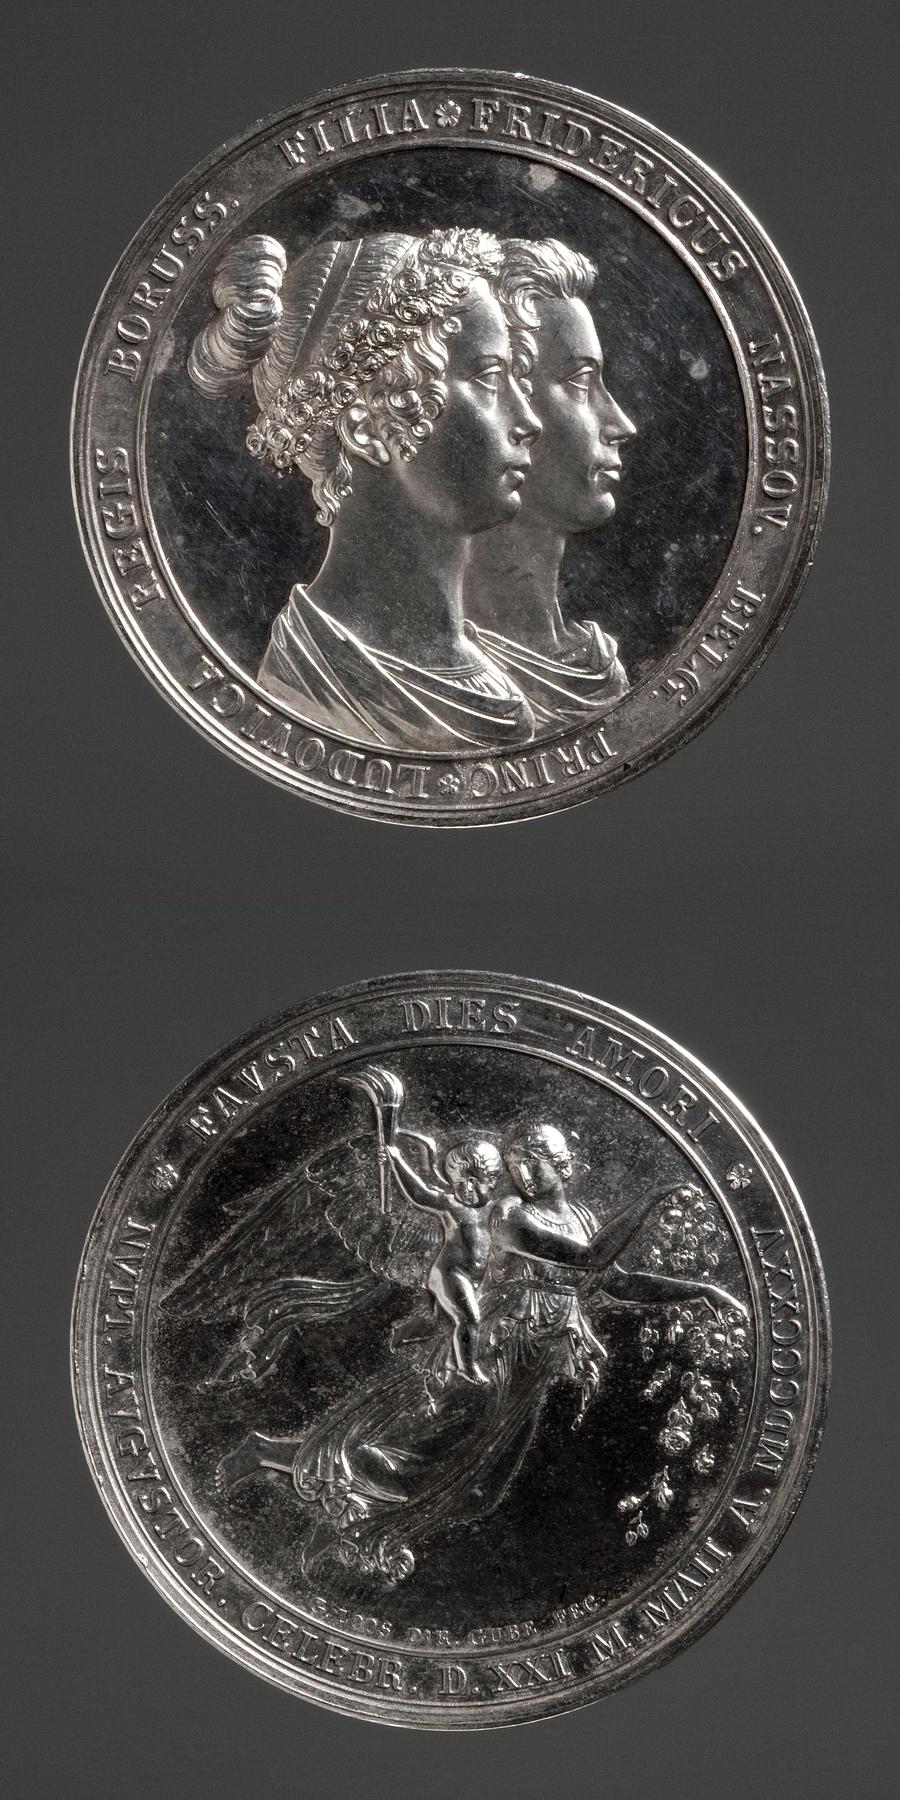 Medaljens forside: Prins Frederik af Nederlandenes og prinsesse Louises bryllup. Medaljens bagside: Dagen, F141